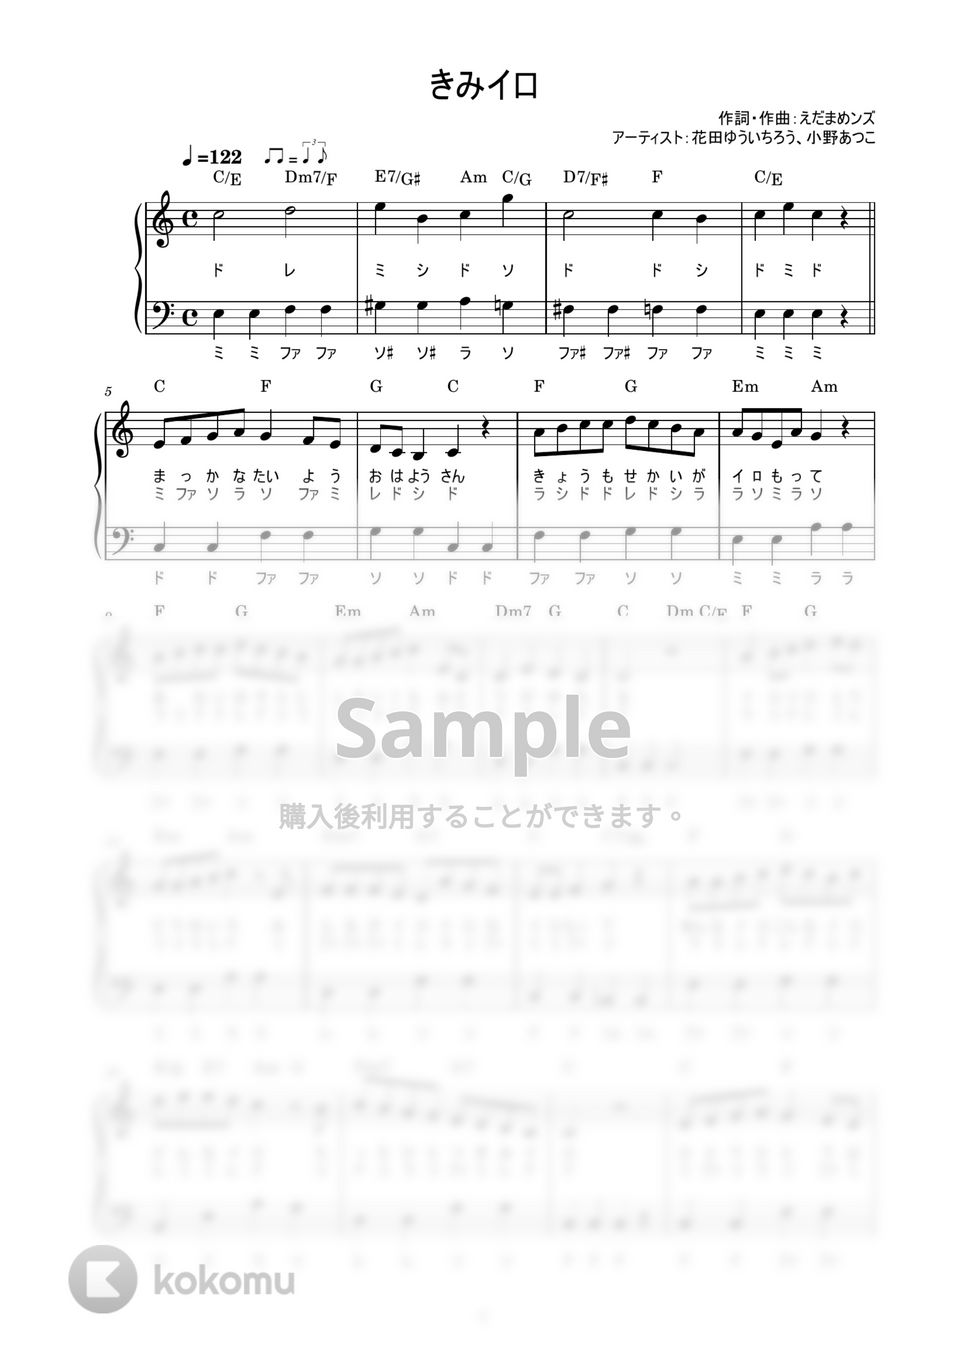 きみイロ (かんたん / 歌詞付き / ドレミ付き / 初心者) by piano.tokyo